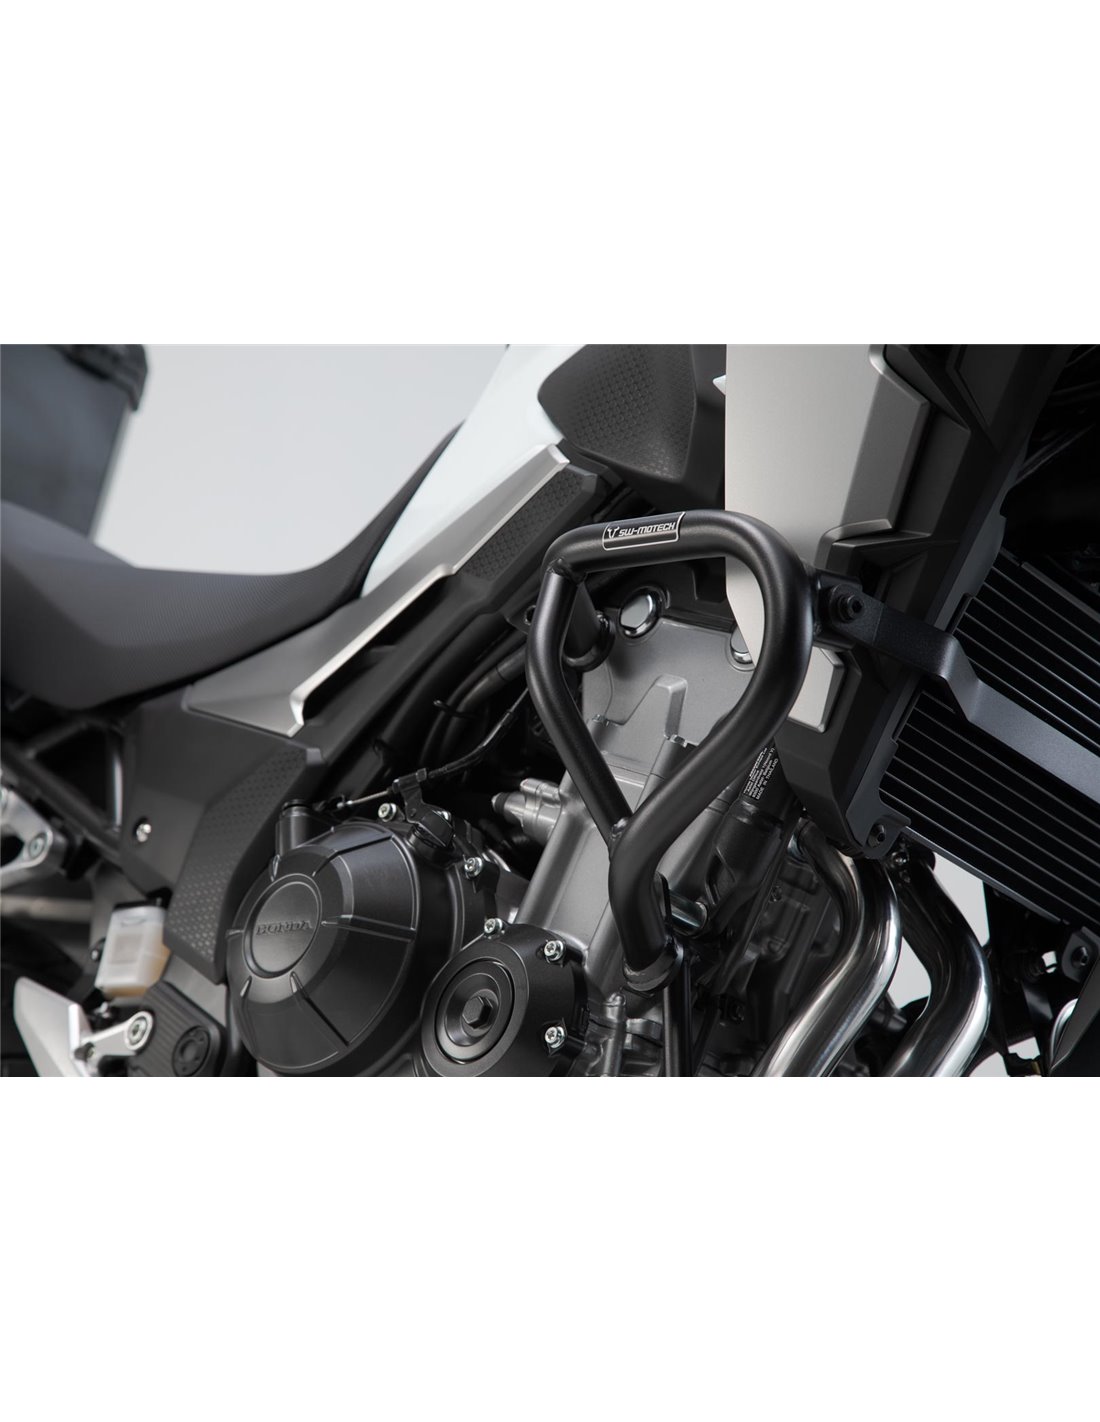 Protección de motor fiable para CB 500 X (16-), protección para la moto.